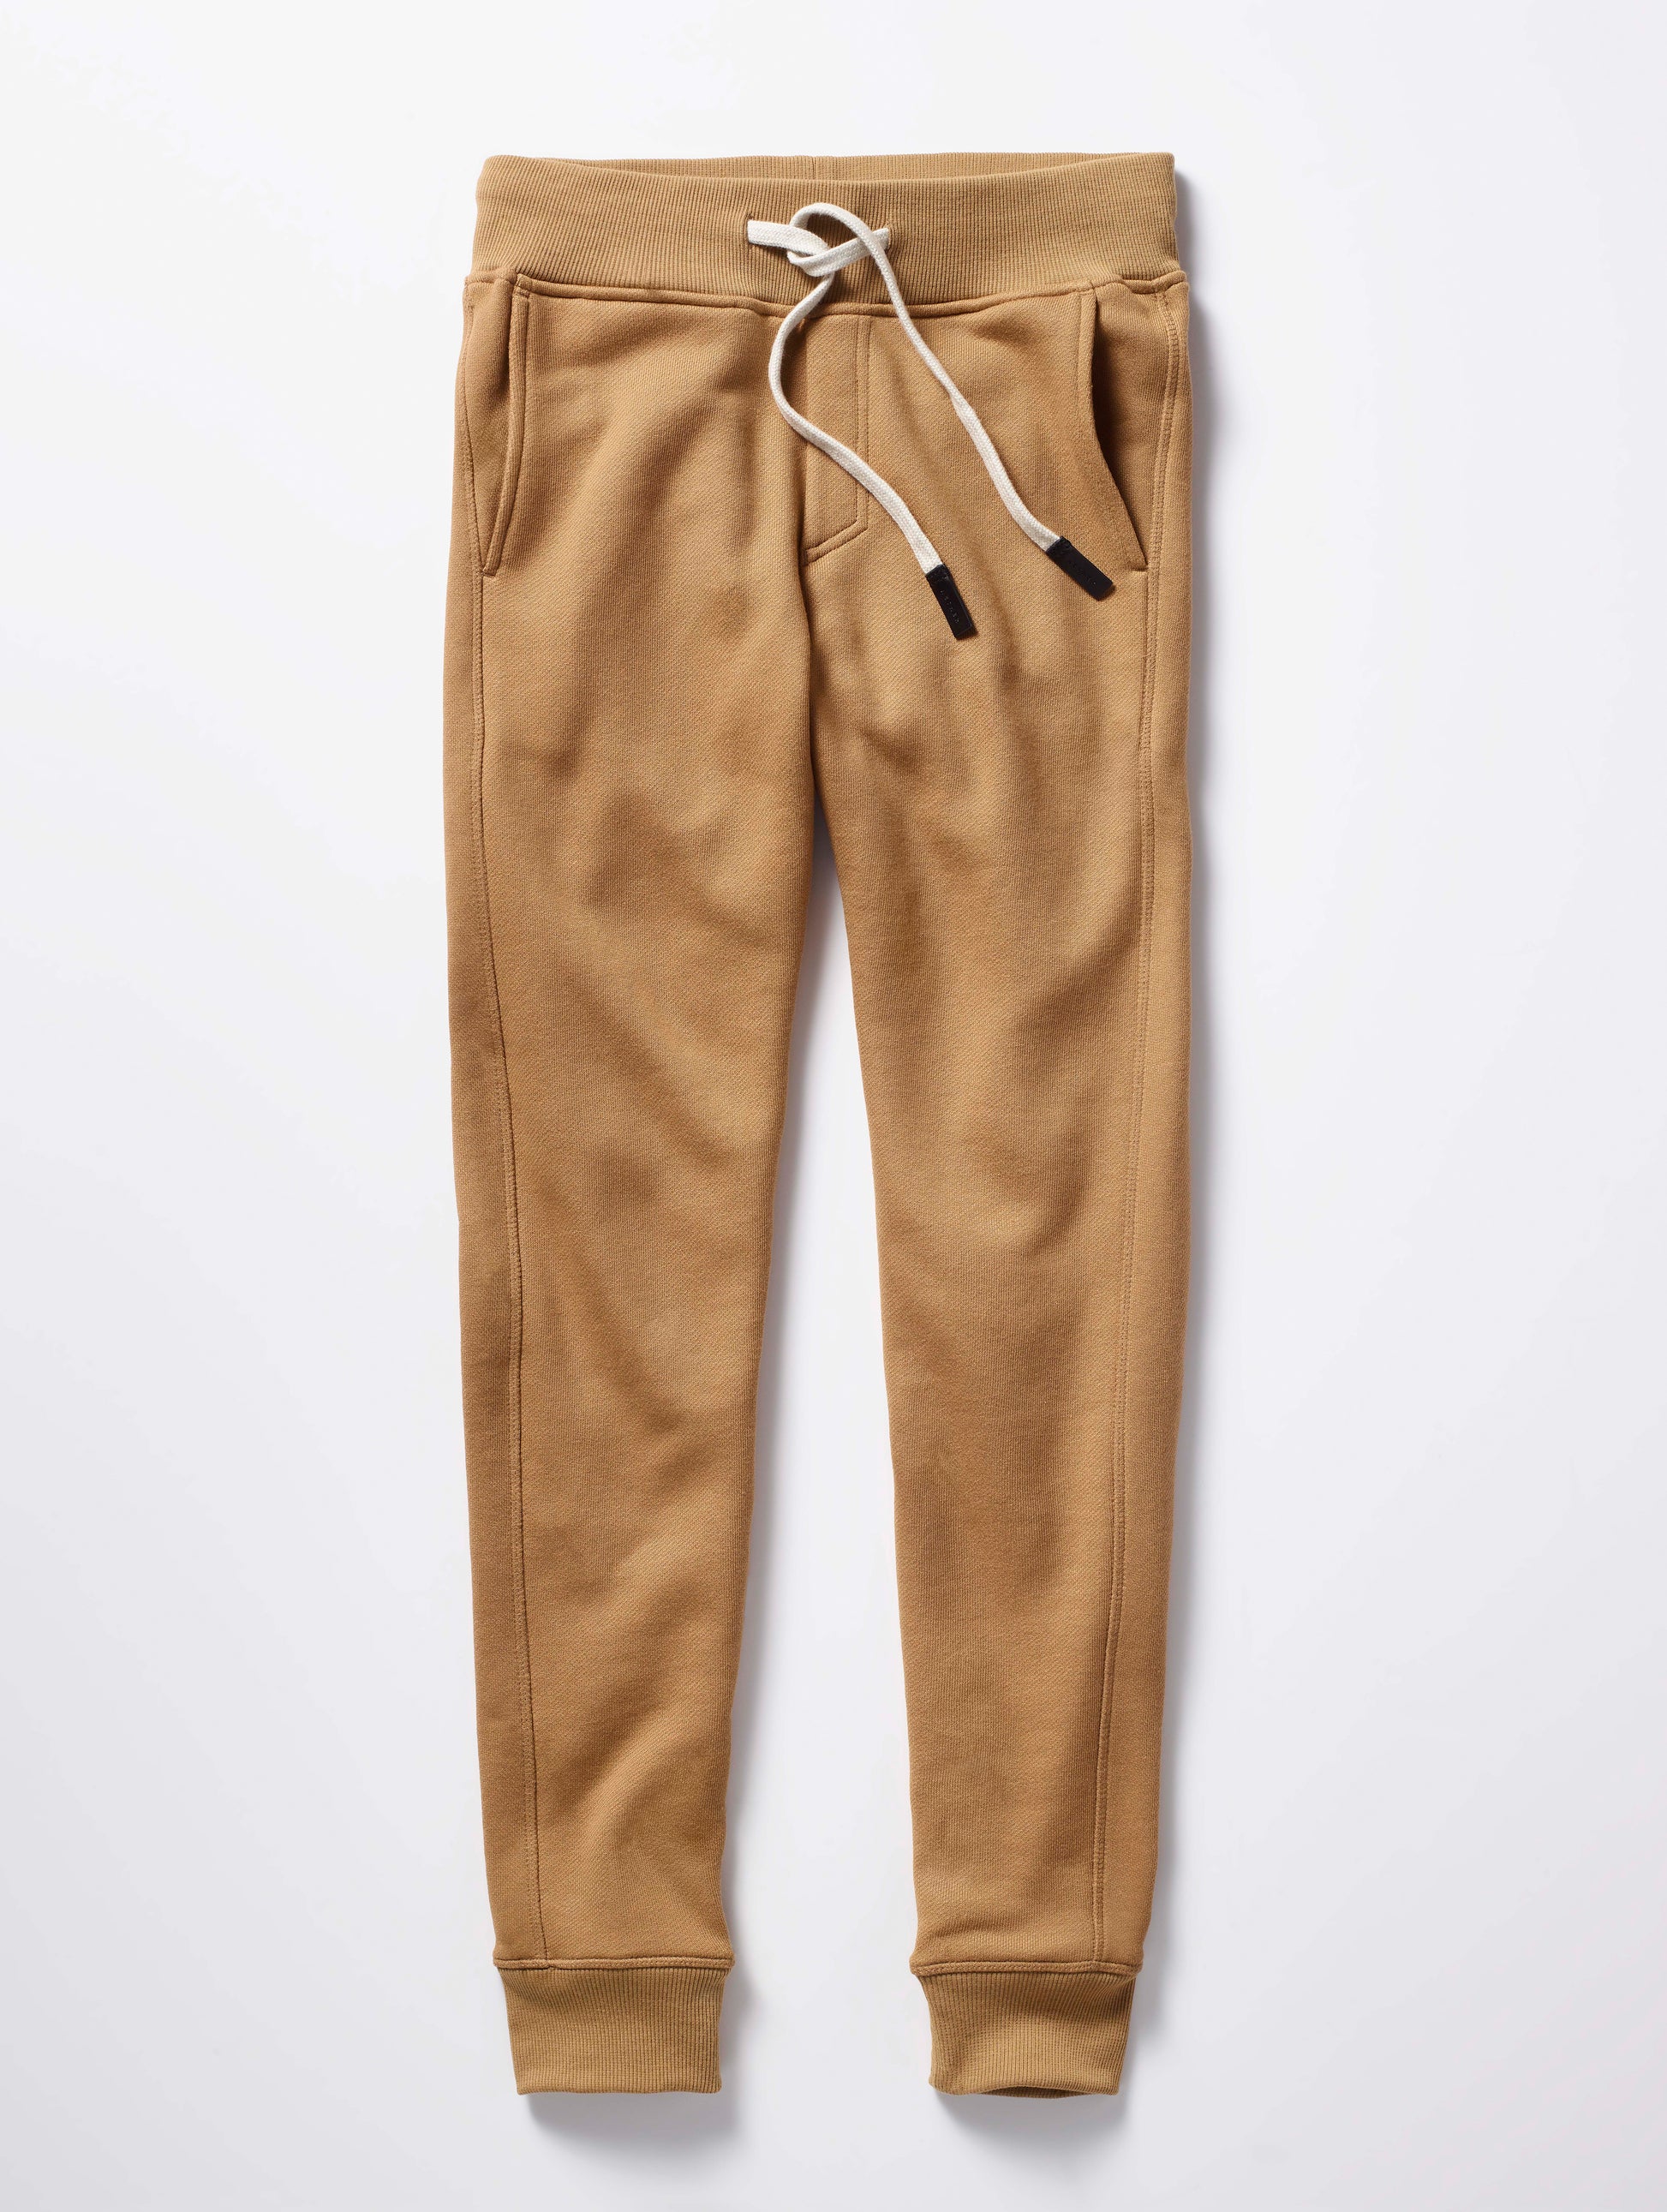 brown sweatpants for men